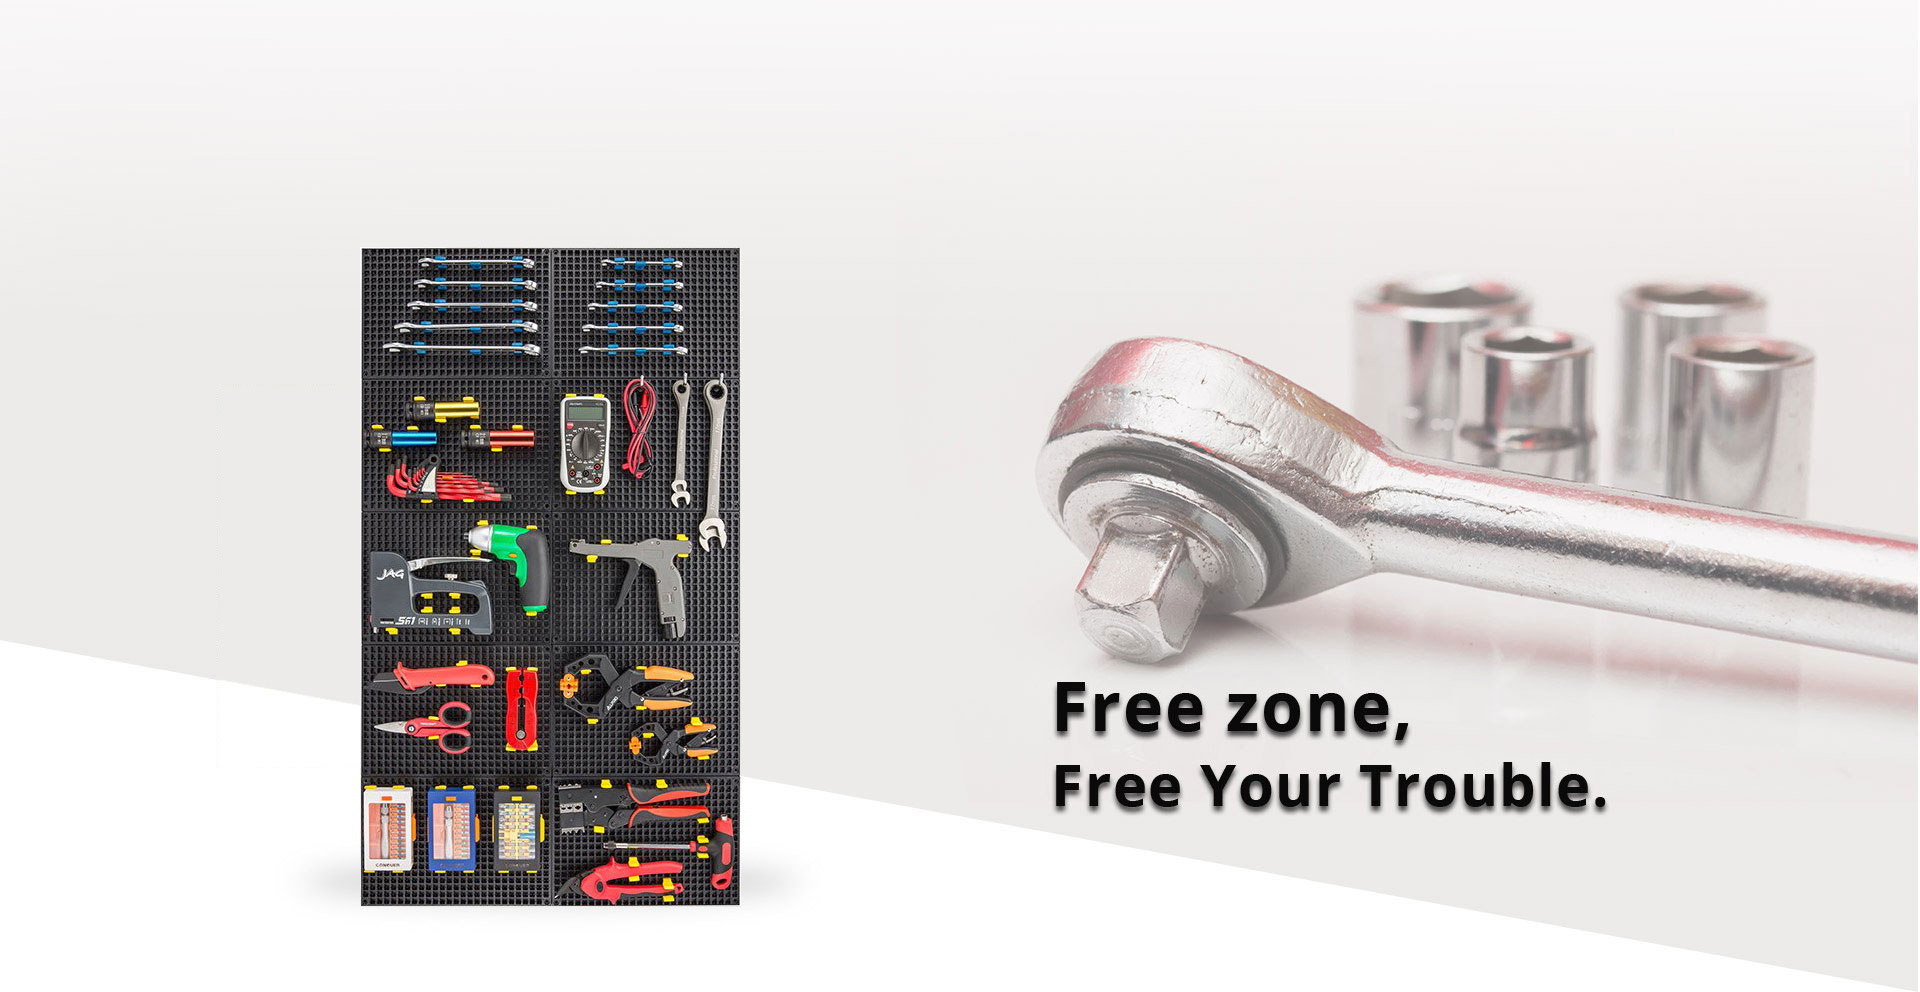 FreeZone-banner